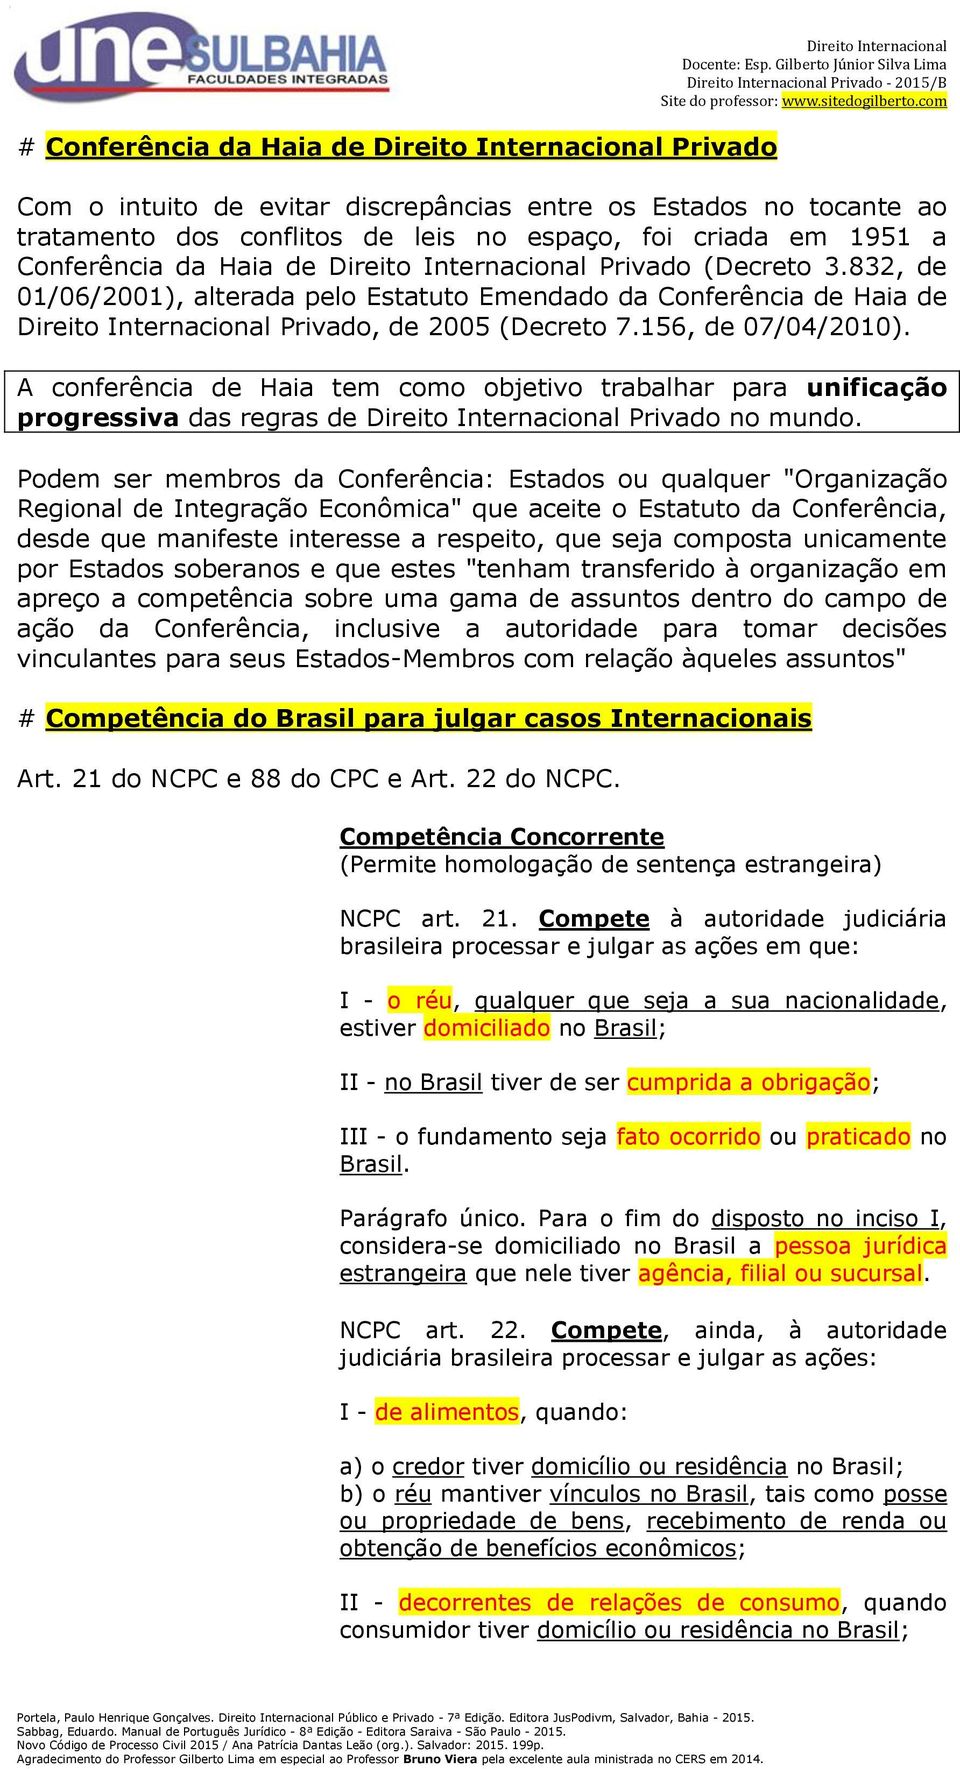 832, de 01/06/2001), alterada pelo Estatuto Emendado da Conferência de Haia de Direito Internacional Privado, de 2005 (Decreto 7.156, de 07/04/2010).